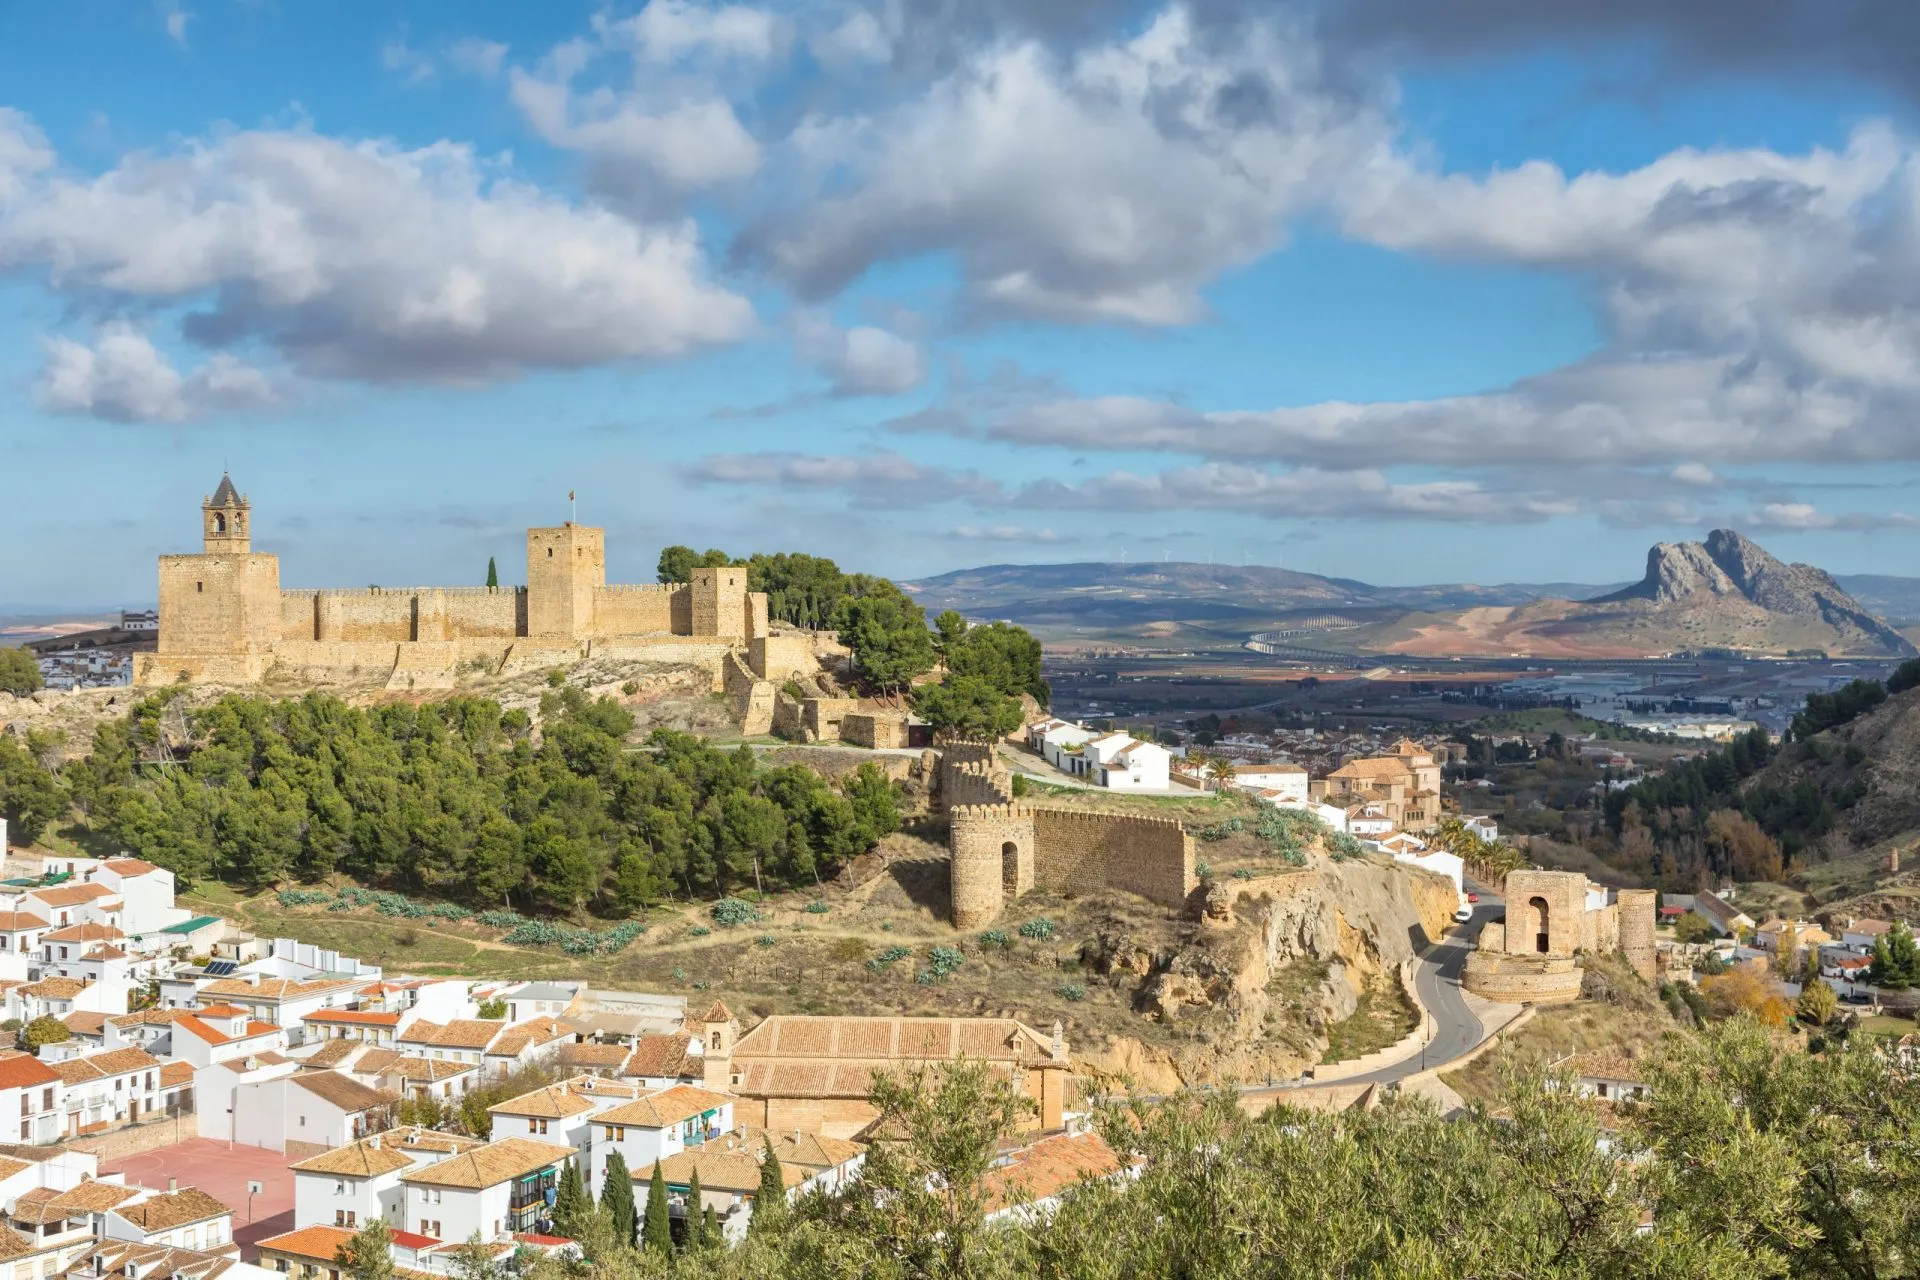 Bybillede af Antequera med den mauriske fæstning Alcazaba, Malaga-provinsen, Andalusien, Spanien